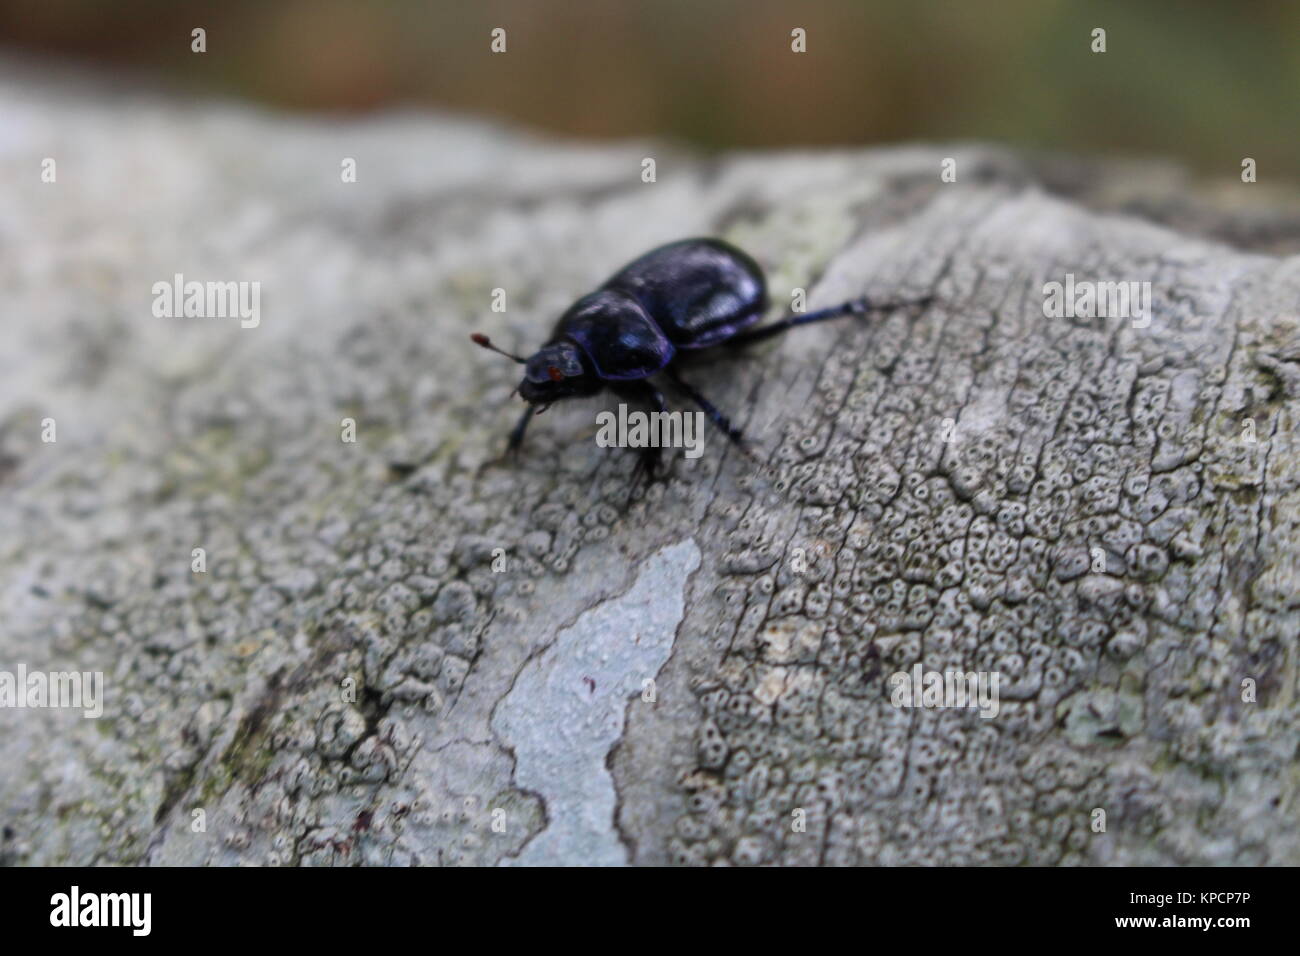 Escarabajos, Dor escarabajo, Geotropes stercorarius, Foto de stock